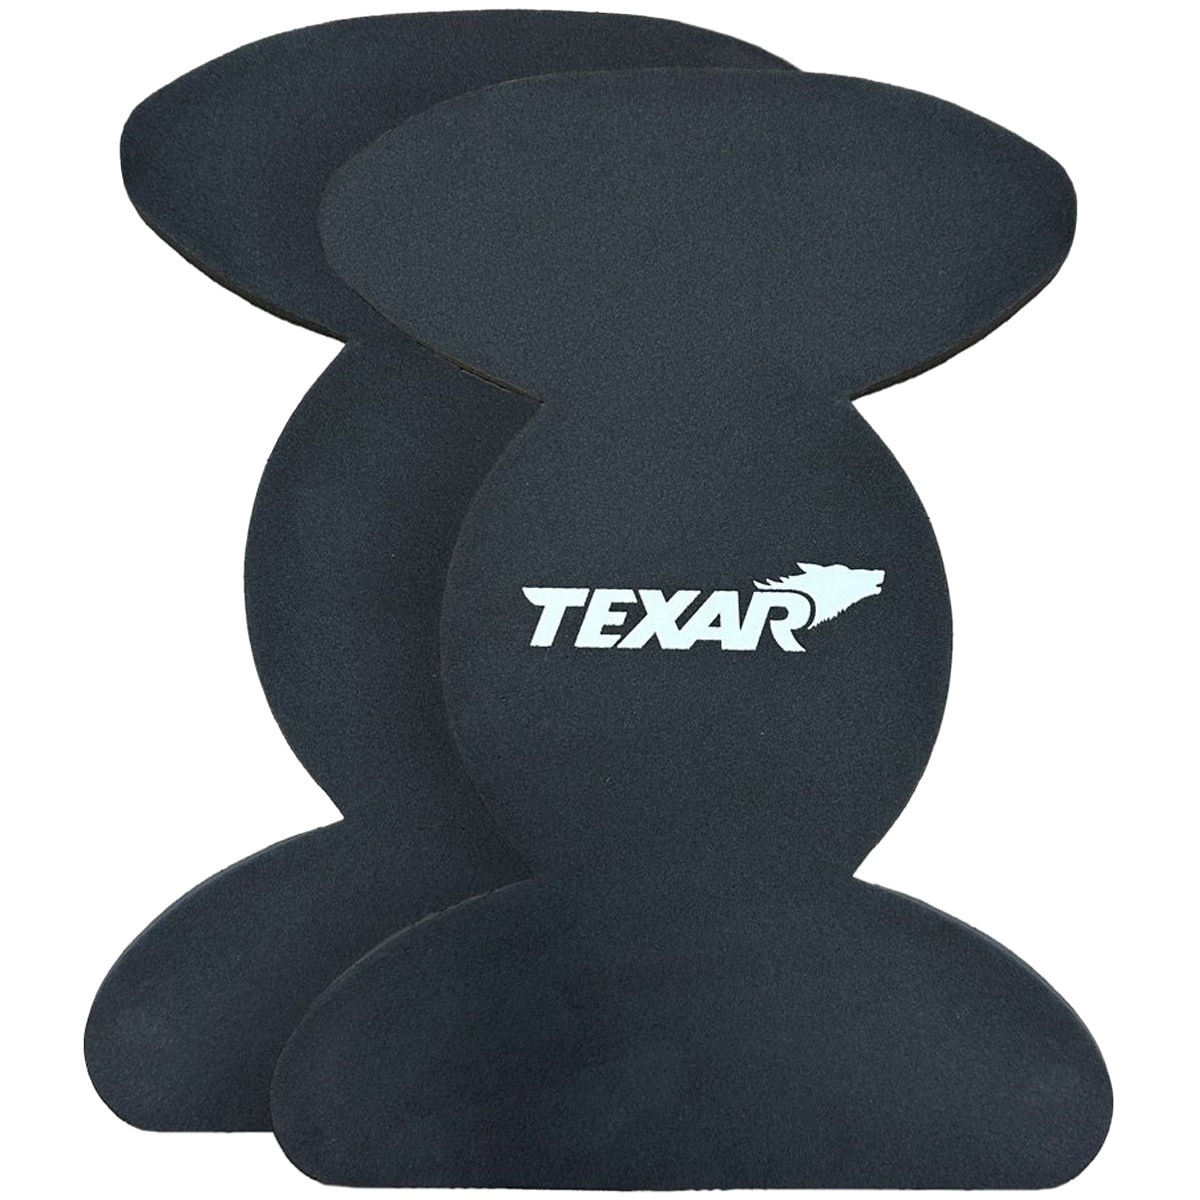 Захисні вставки Texar для штанів - чорні